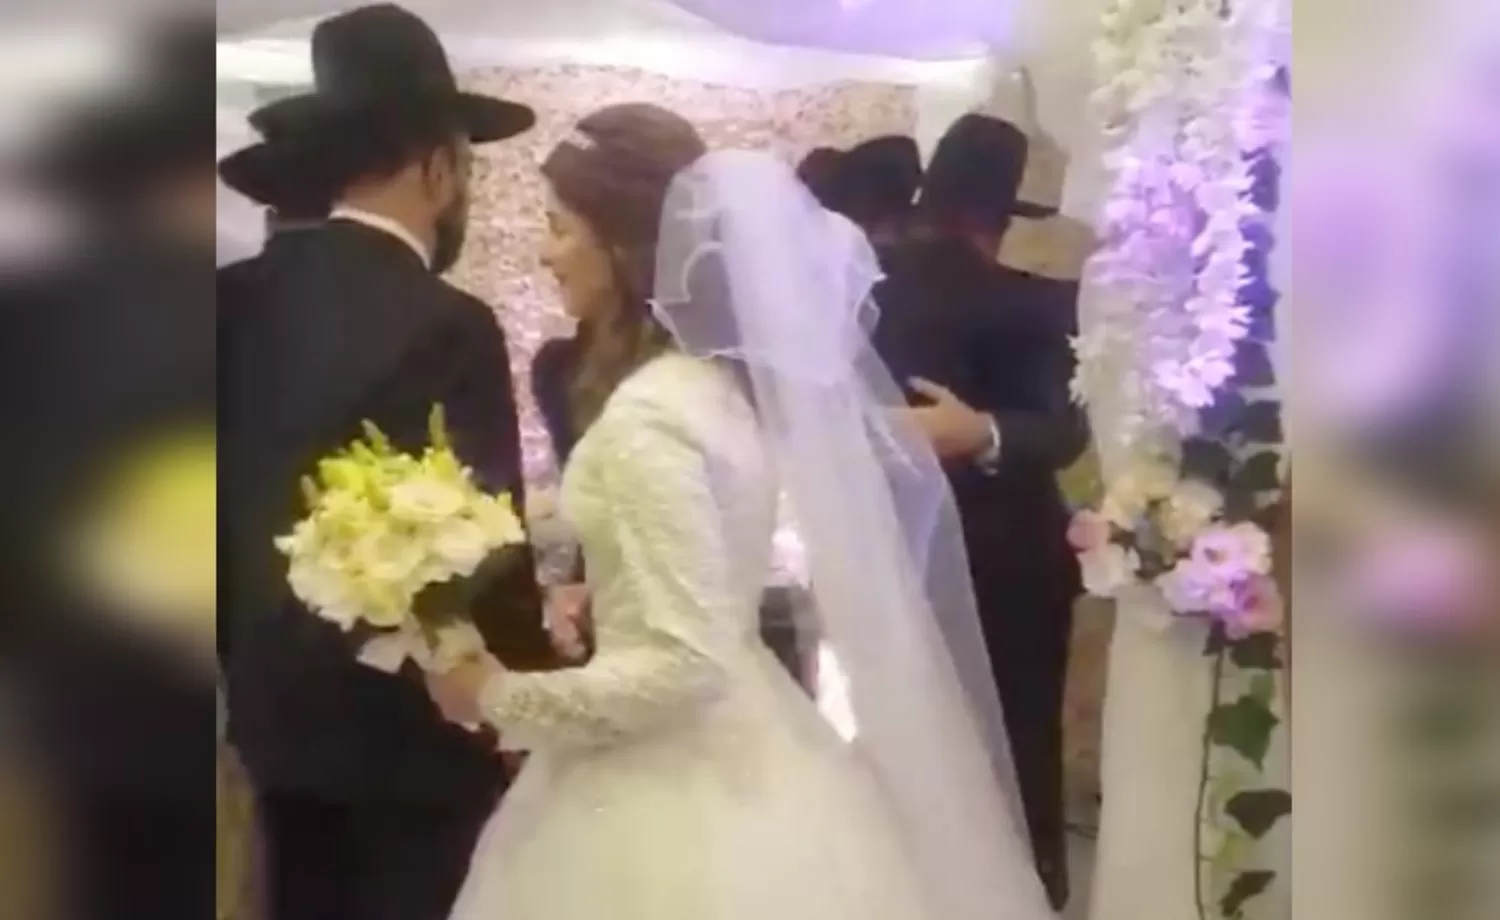 Los novios, sus padres y el rabino que los casó, todos detenidos por violar la cuarentena